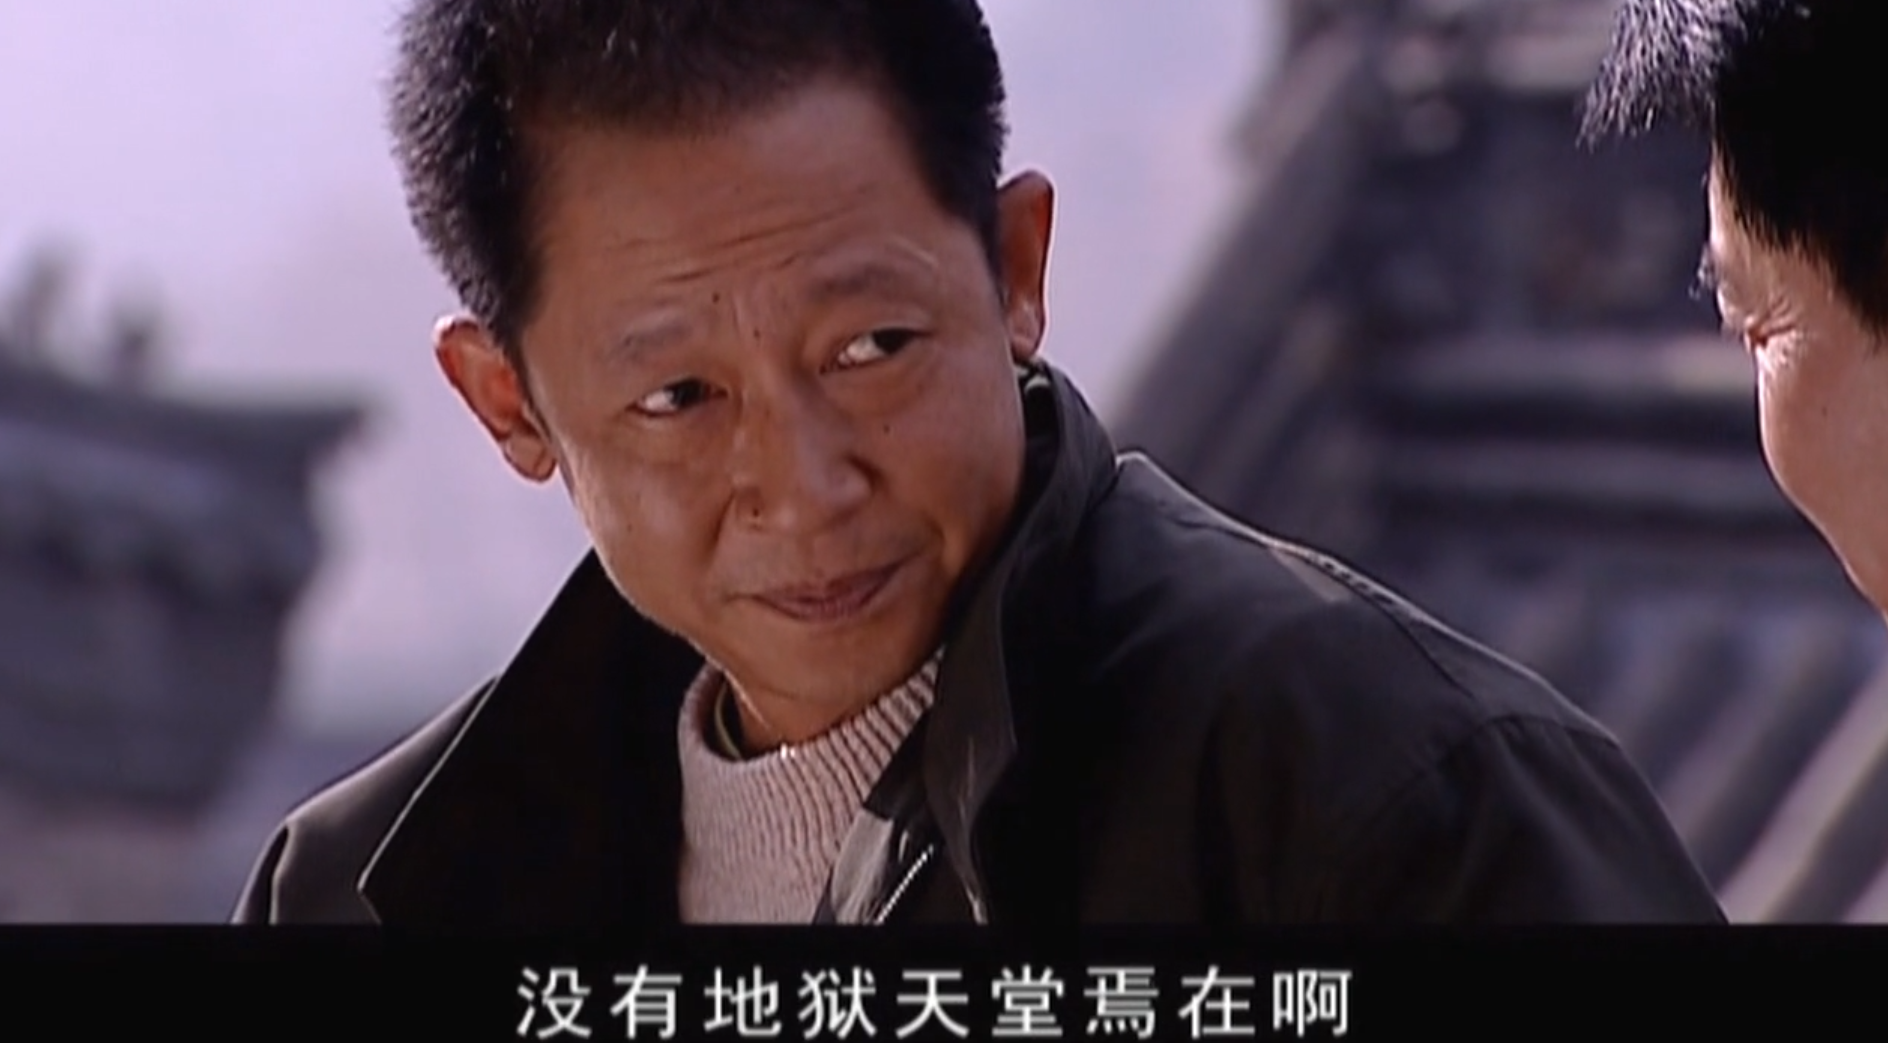 王志文塑造的最经典角色,当属《天道》里的丁元英